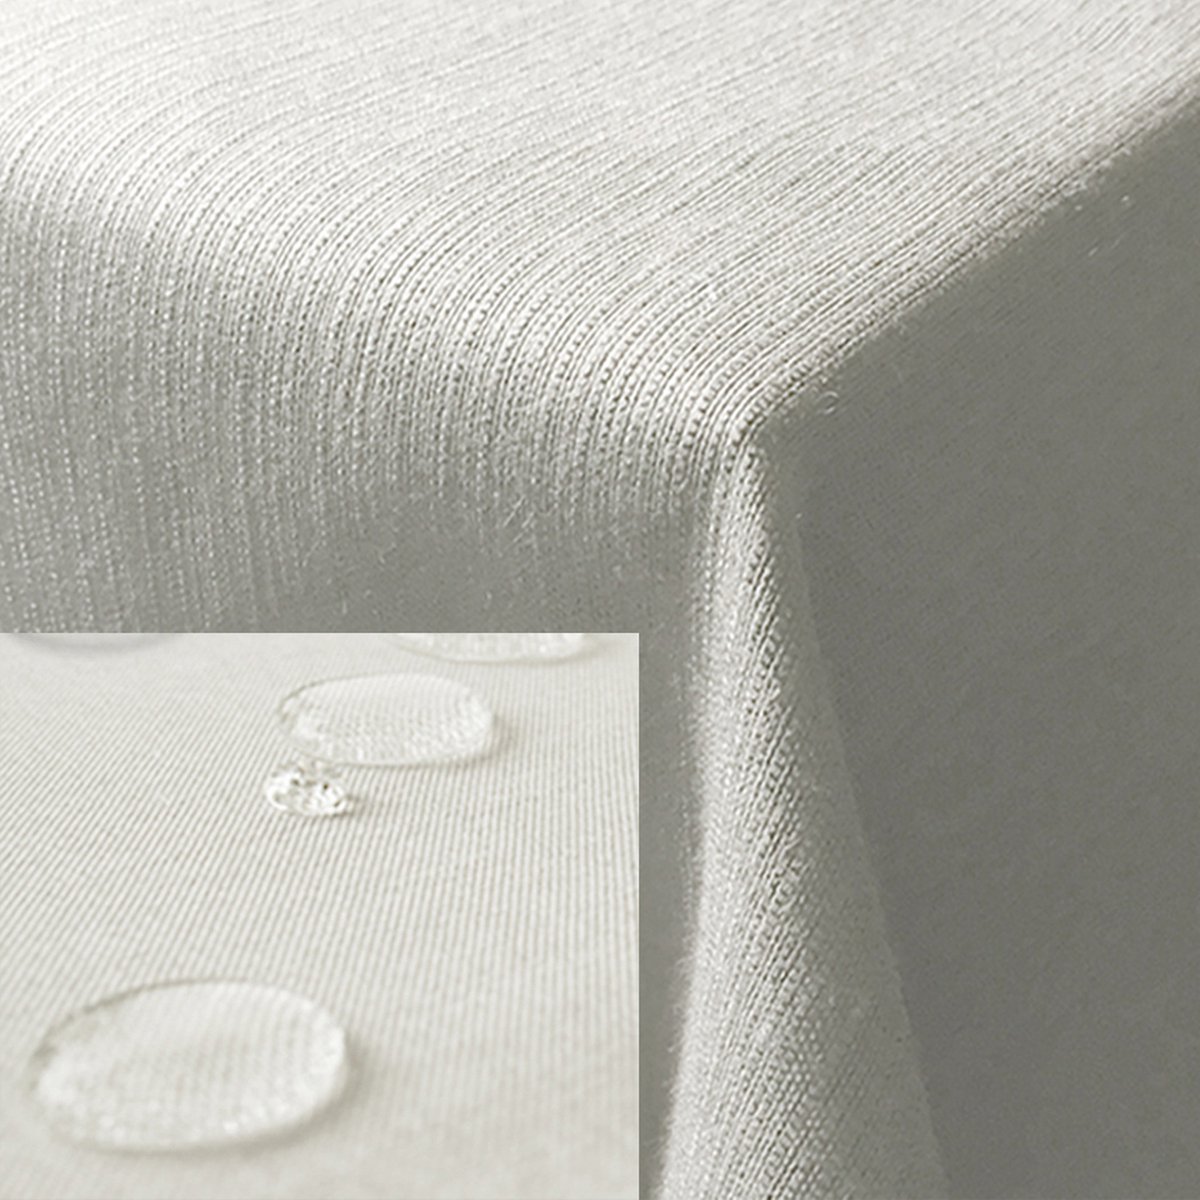 JEMIDI tafelkleed buiten 130 x 130 cm - Tafellaken afwasbaar - Tafelzeil buiten of binnen met linnenlook - Vuil- en waterafstotend - Wit